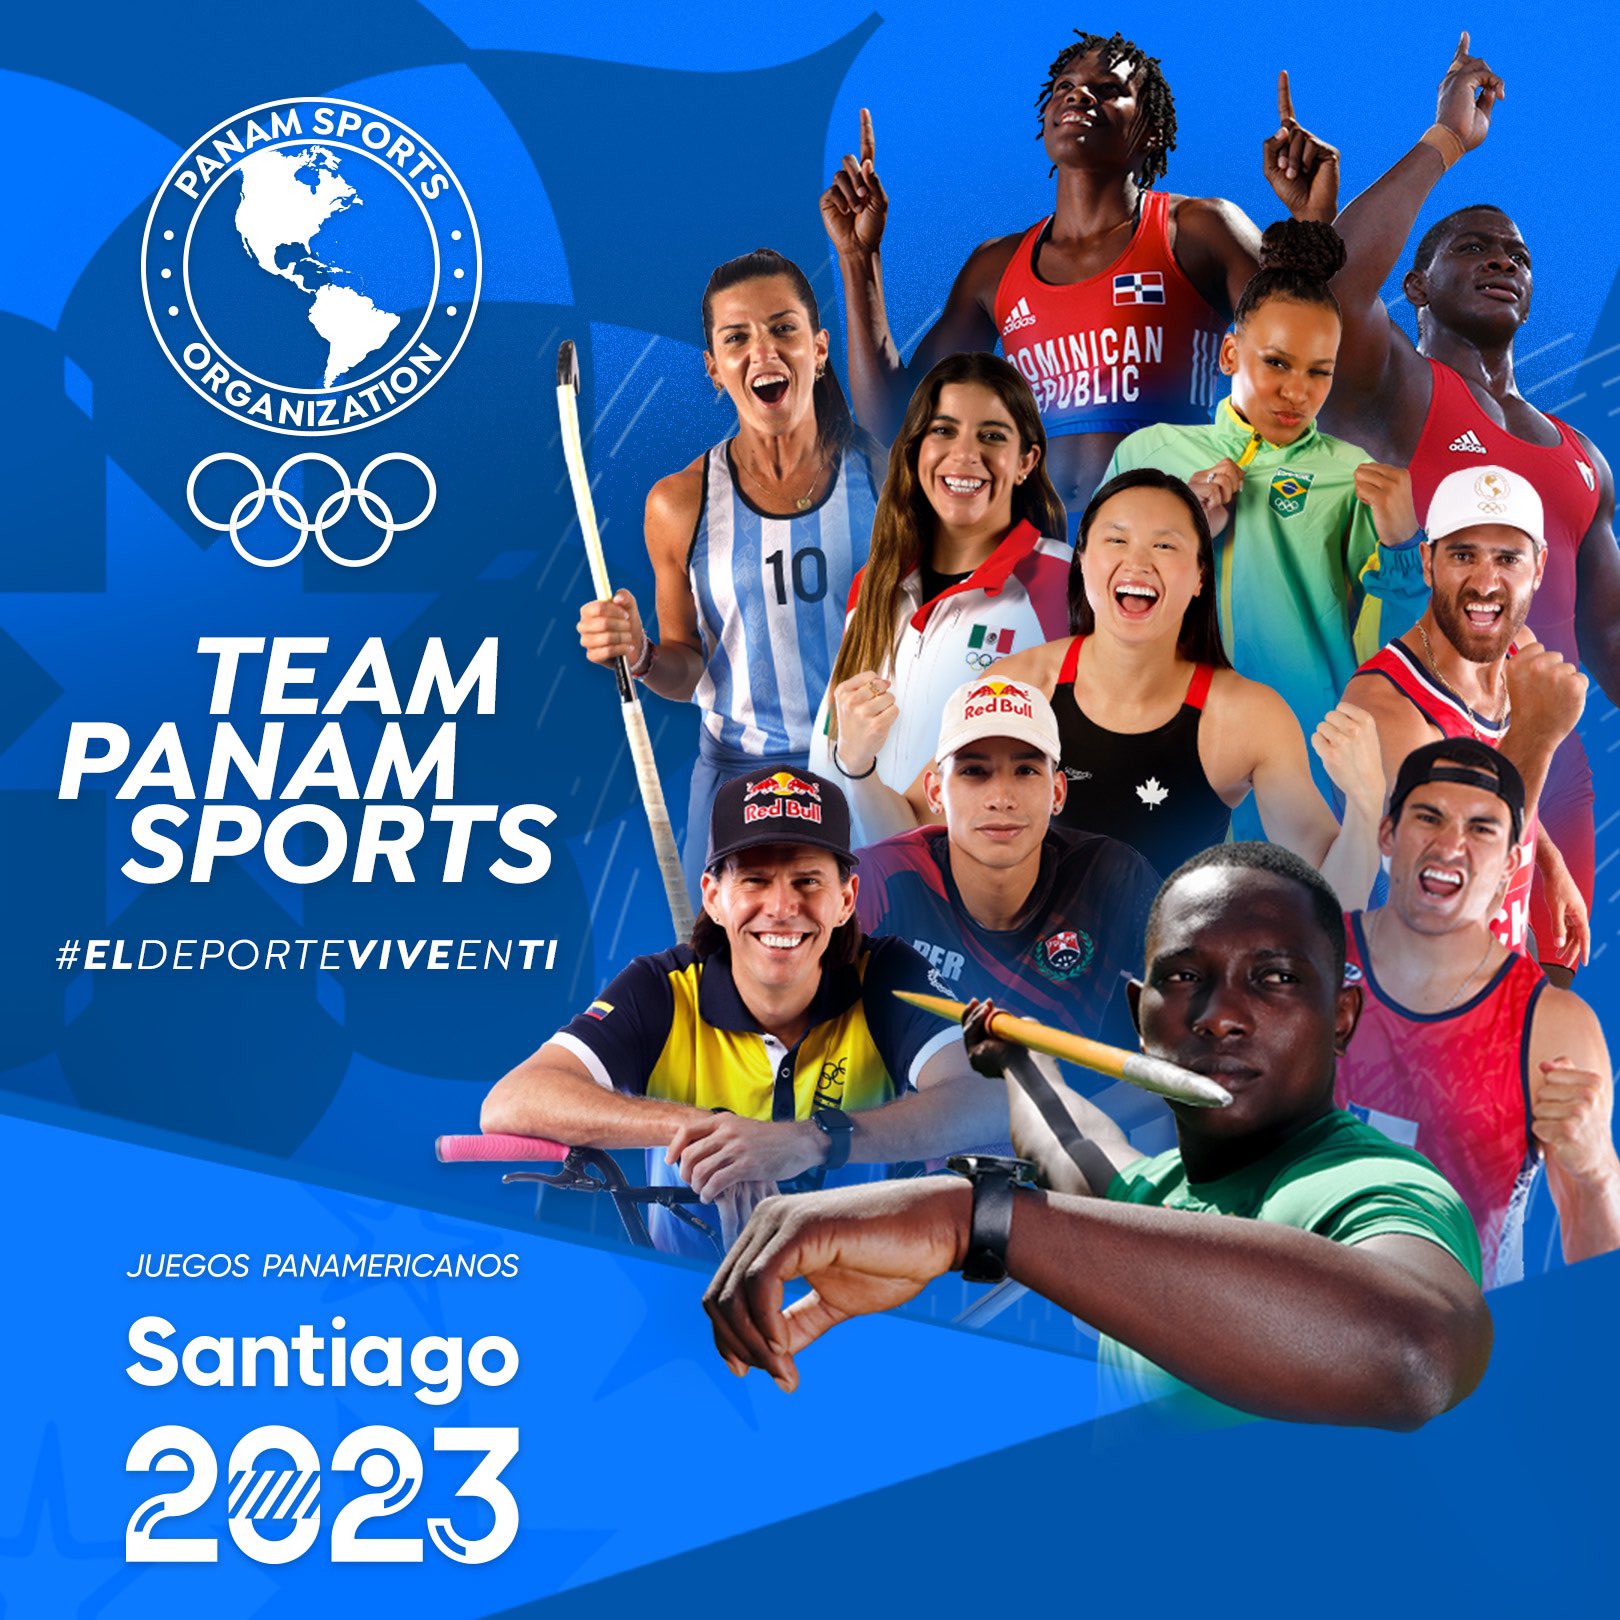 Juegos Panamericanos 2023: con debut de campeones mundiales y olímpicos